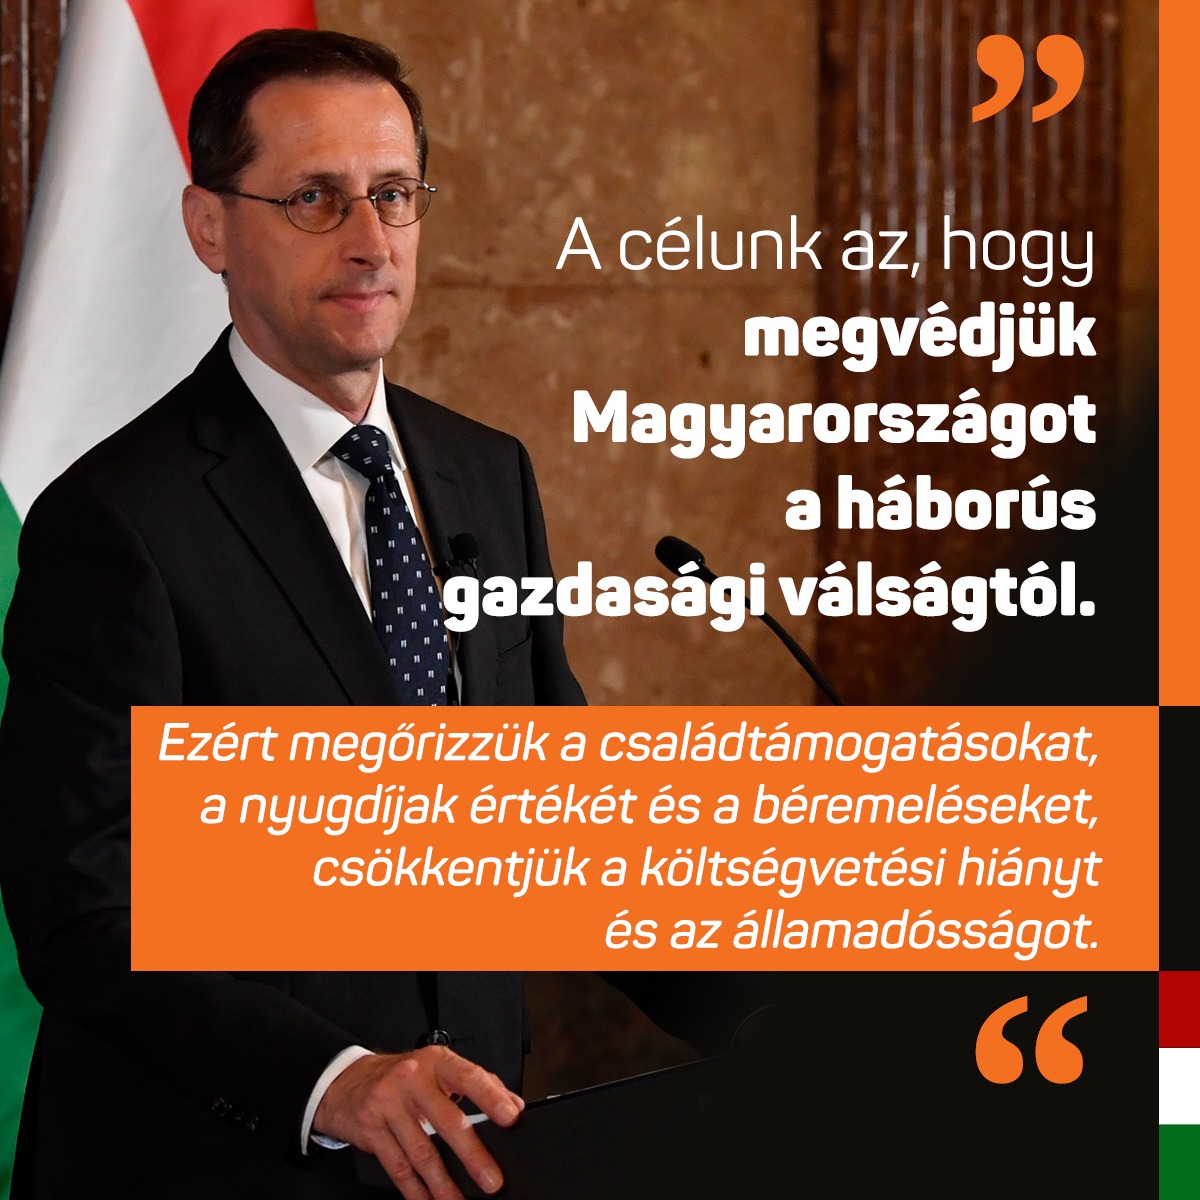 A 2023-as költségvetés forrásait a magyar emberek számára legfontosabb célokra fordítjuk: 🟠 a családok támogatására 🟠 a nyugdíjak védelmére 🟠 a rezsicsökkentés eredményeinek megőrzésére 🟠 az ország biztonságának megerősítésére 🟠 a munkahelyek megóvására 🟠 új munkahelyek létrehozására